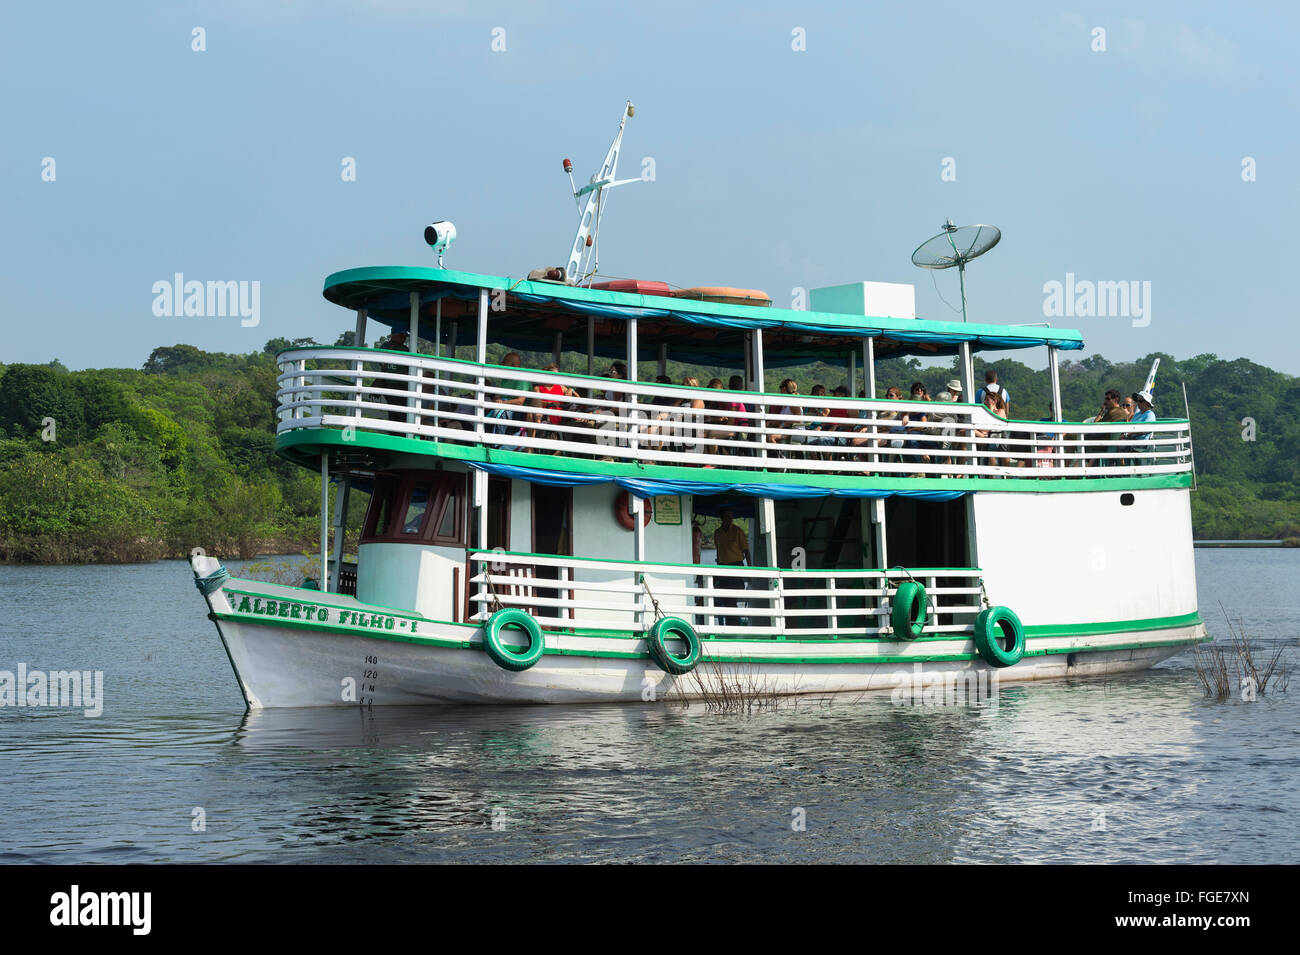 Traditionelle Holz-Boot Navigation mit Touristen auf dem Rio Negro, Manaus, Brasilien Amazona Zustand Stockfoto